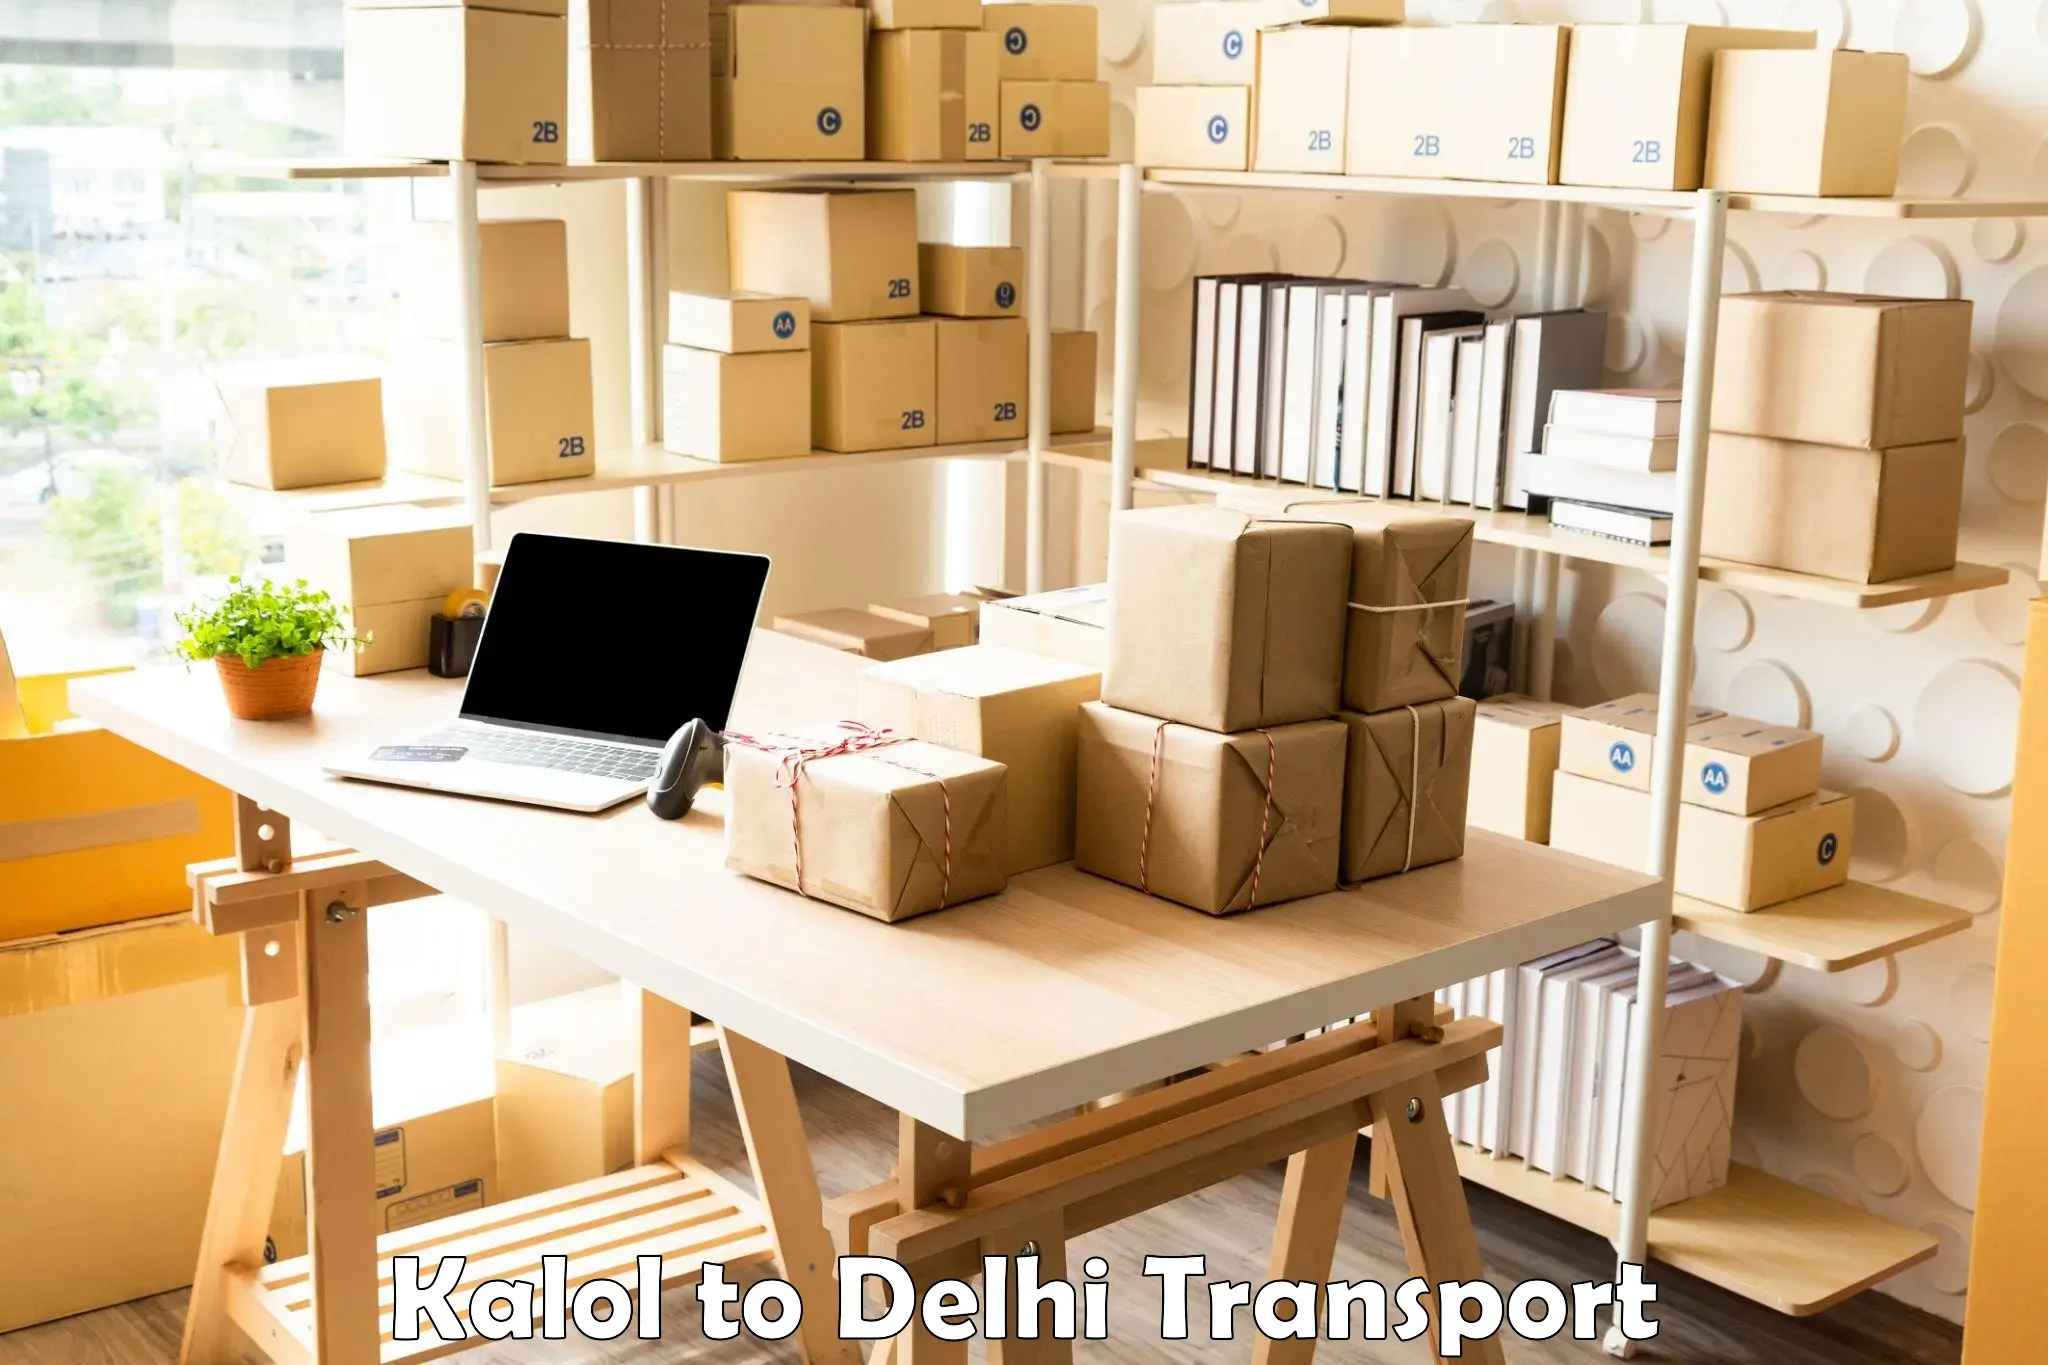 Parcel transport services Kalol to Delhi Technological University DTU